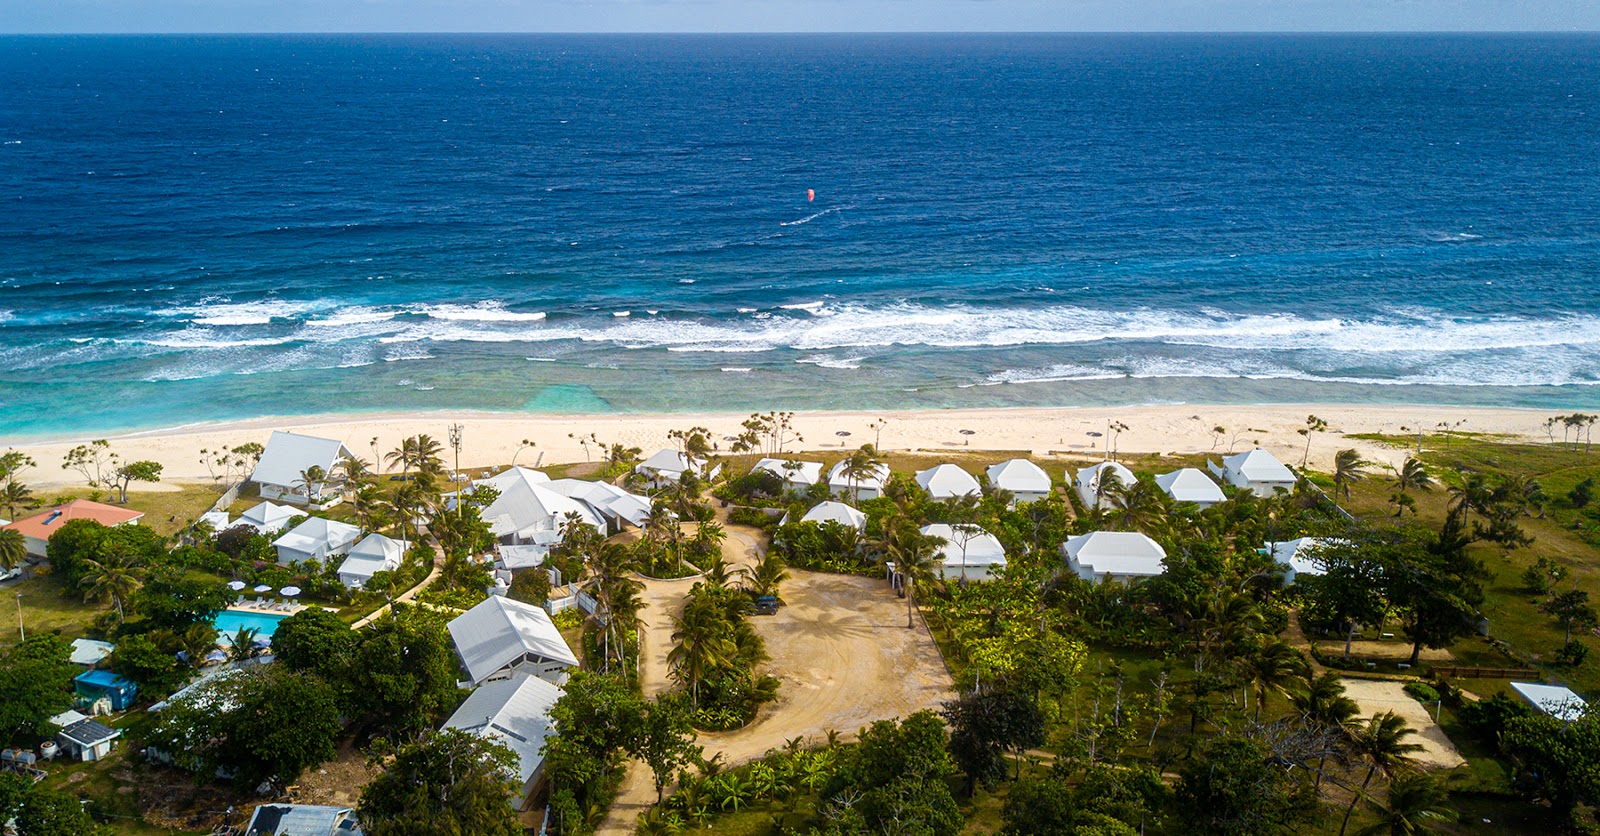 Zdjęcie Efate beach - popularne miejsce wśród znawców relaksu